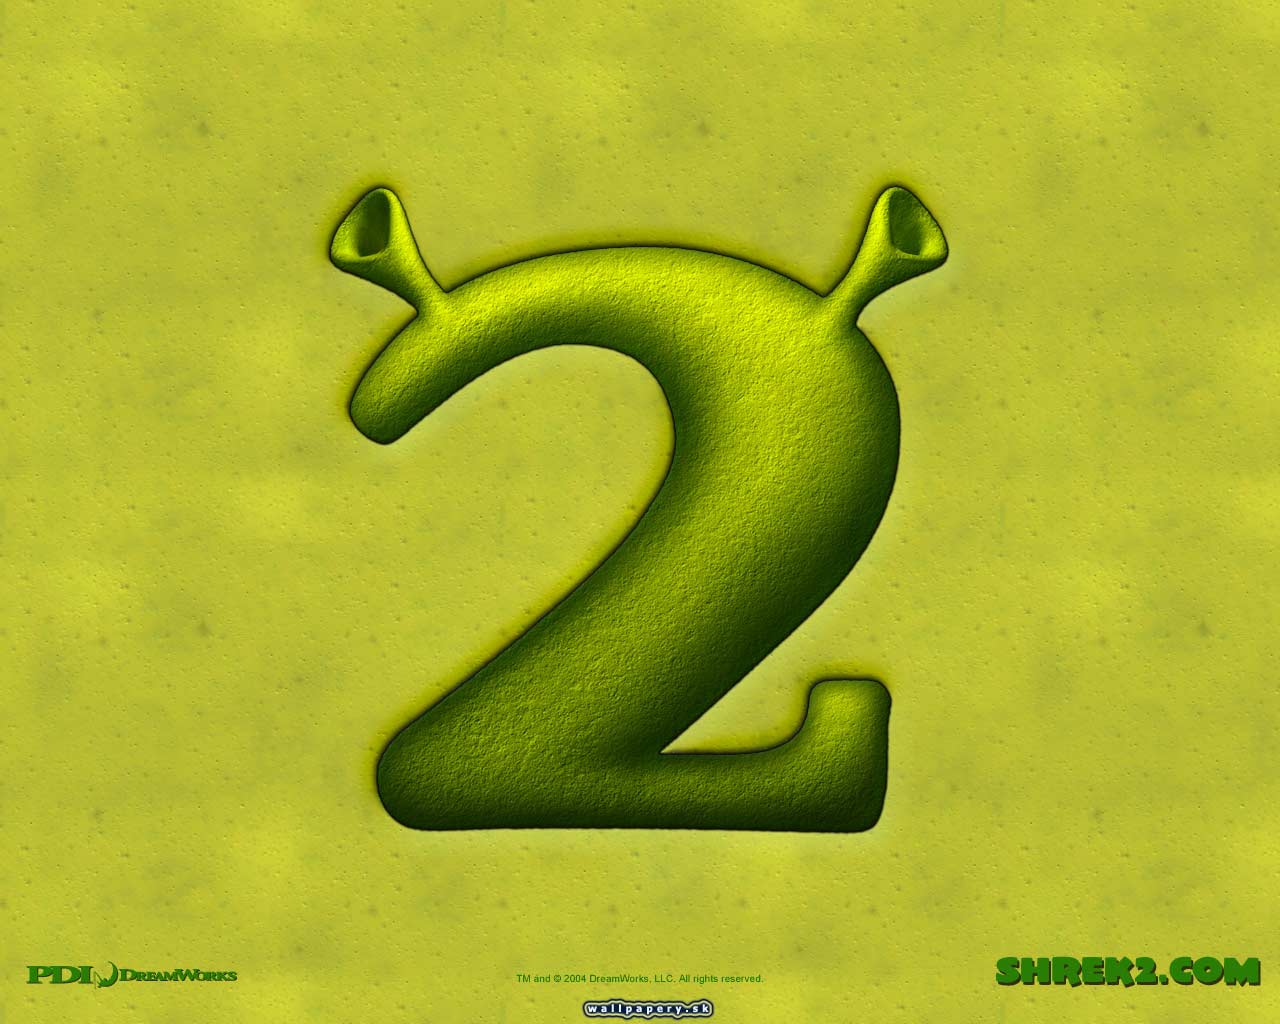 Shrek 2: The Game - wallpaper 3